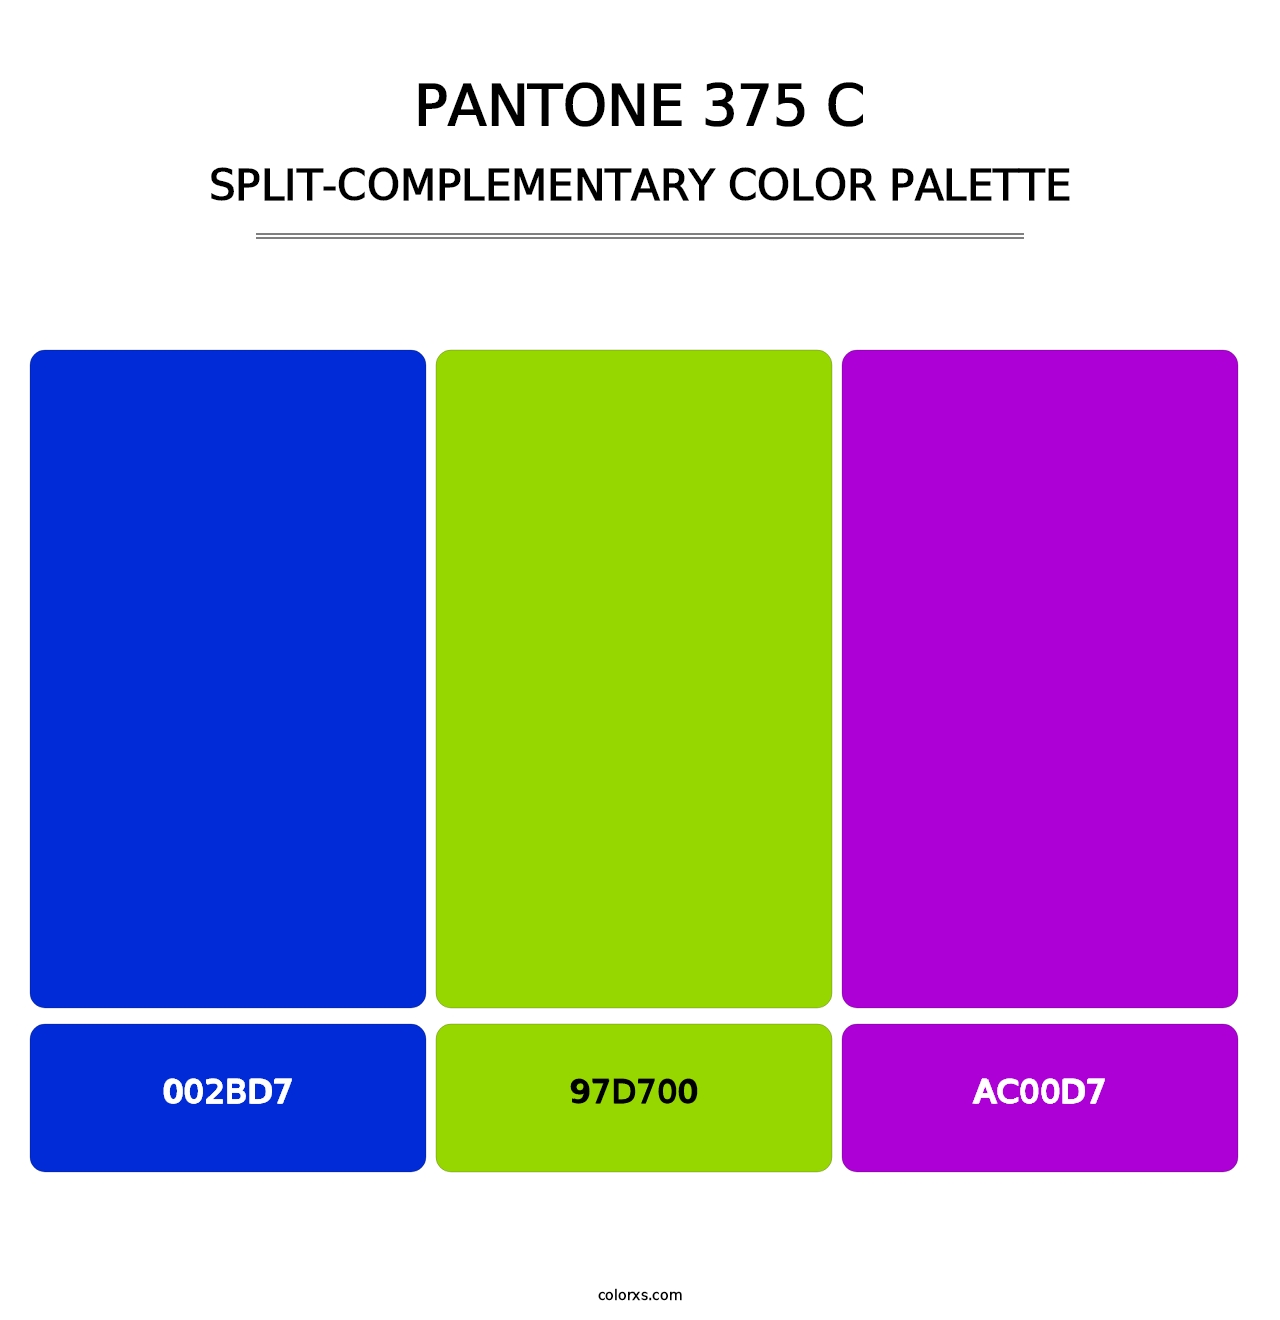 PANTONE 375 C - Split-Complementary Color Palette